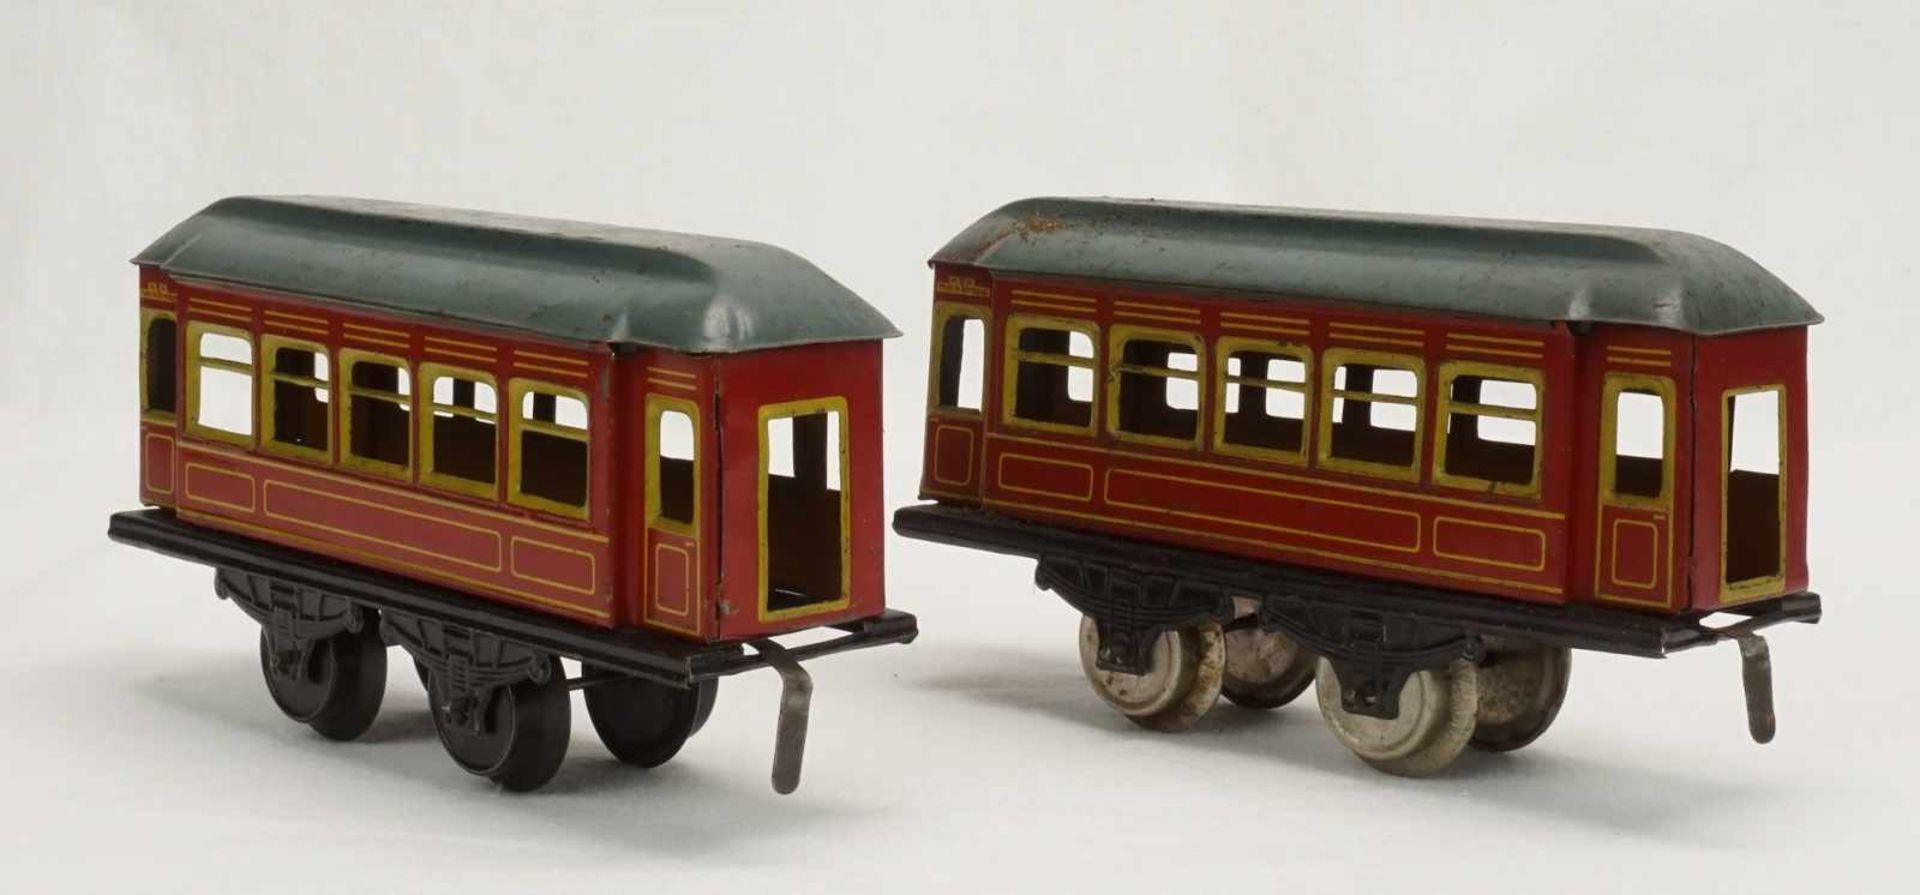 Drei Karl Bub Nürnberg Personenwagen, Spur 0, um 1920Blech lithografiert, zwei rote und ein blauer - Image 3 of 5